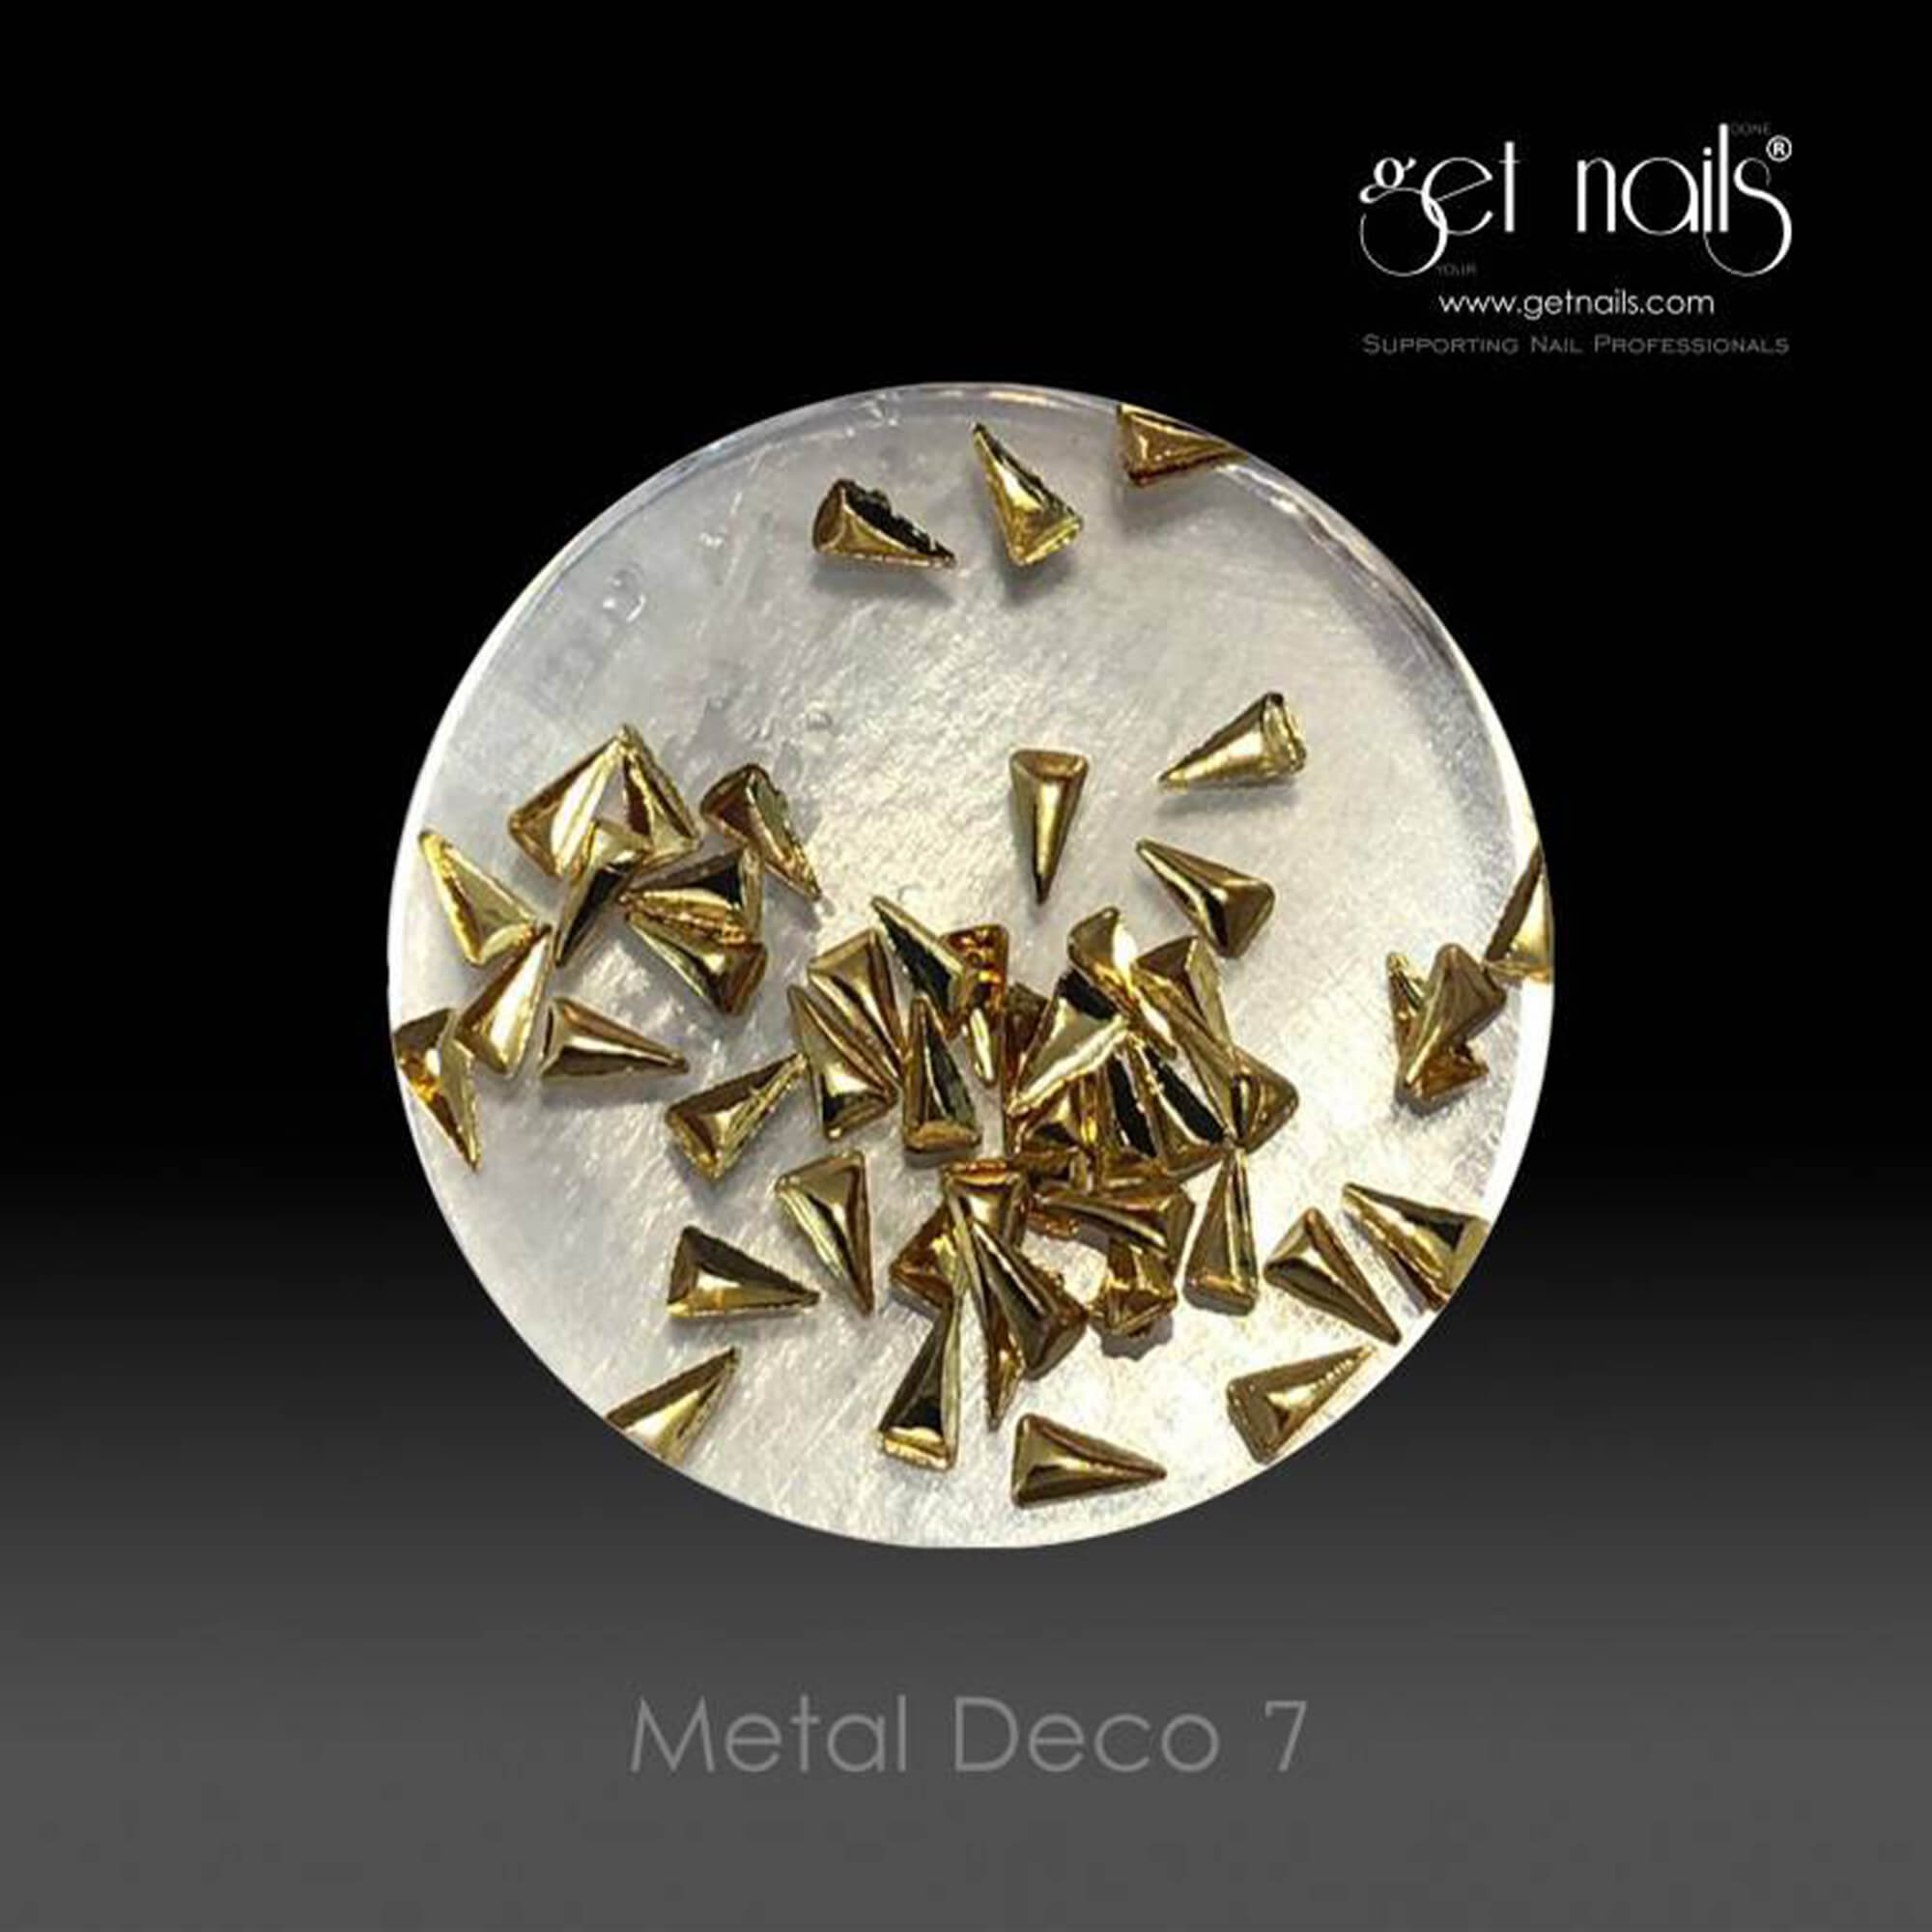 Get Nails Austria - Metal Deco 7 Gold, 50 db